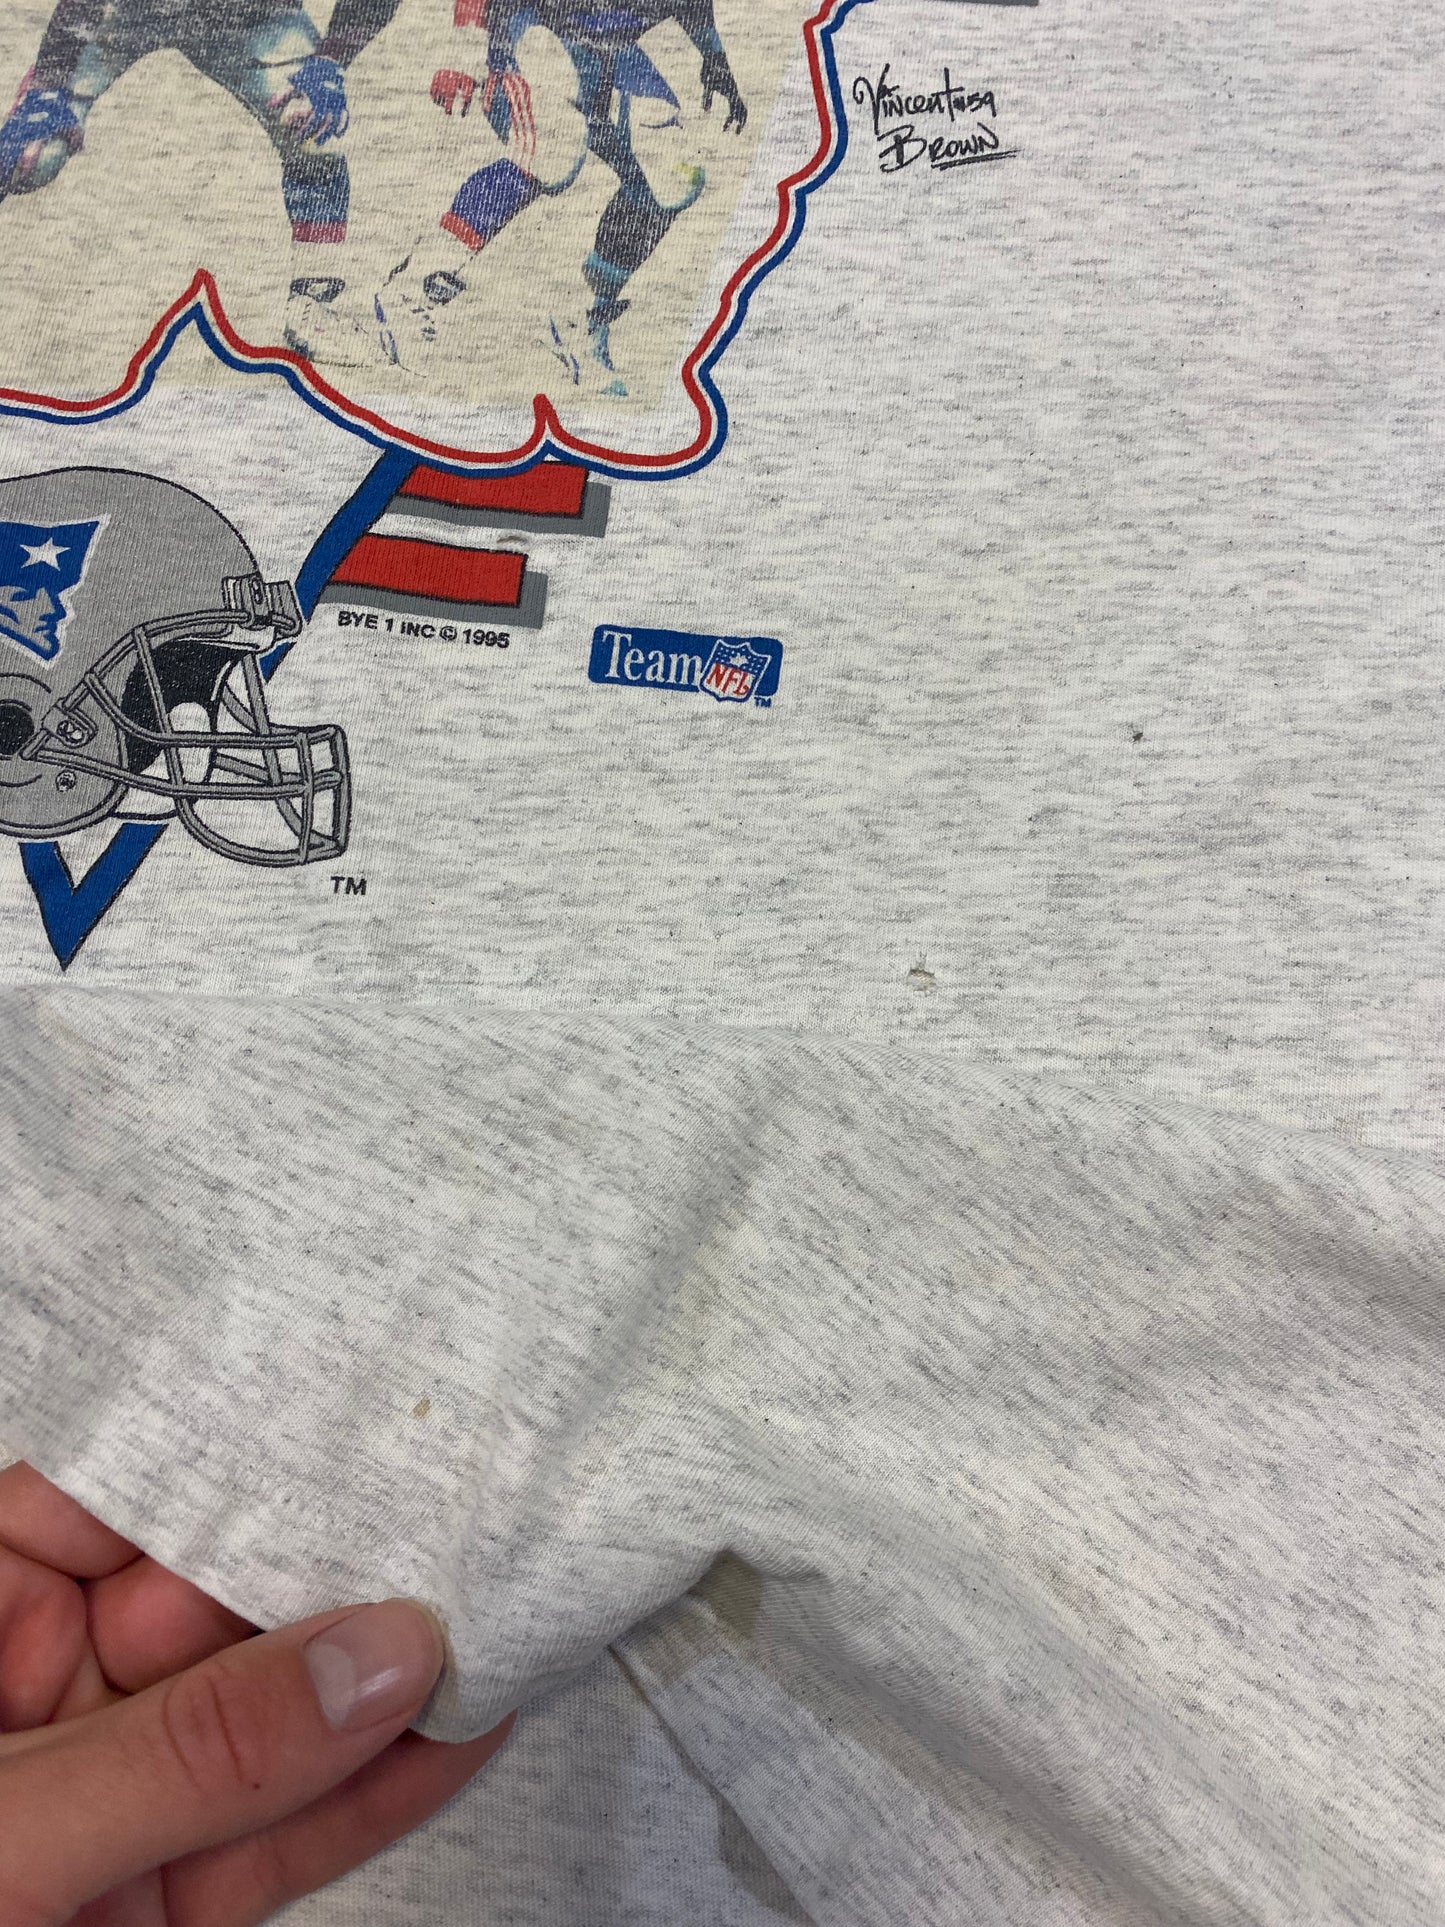 1995 New England Patriots Big 3 T-Shirt